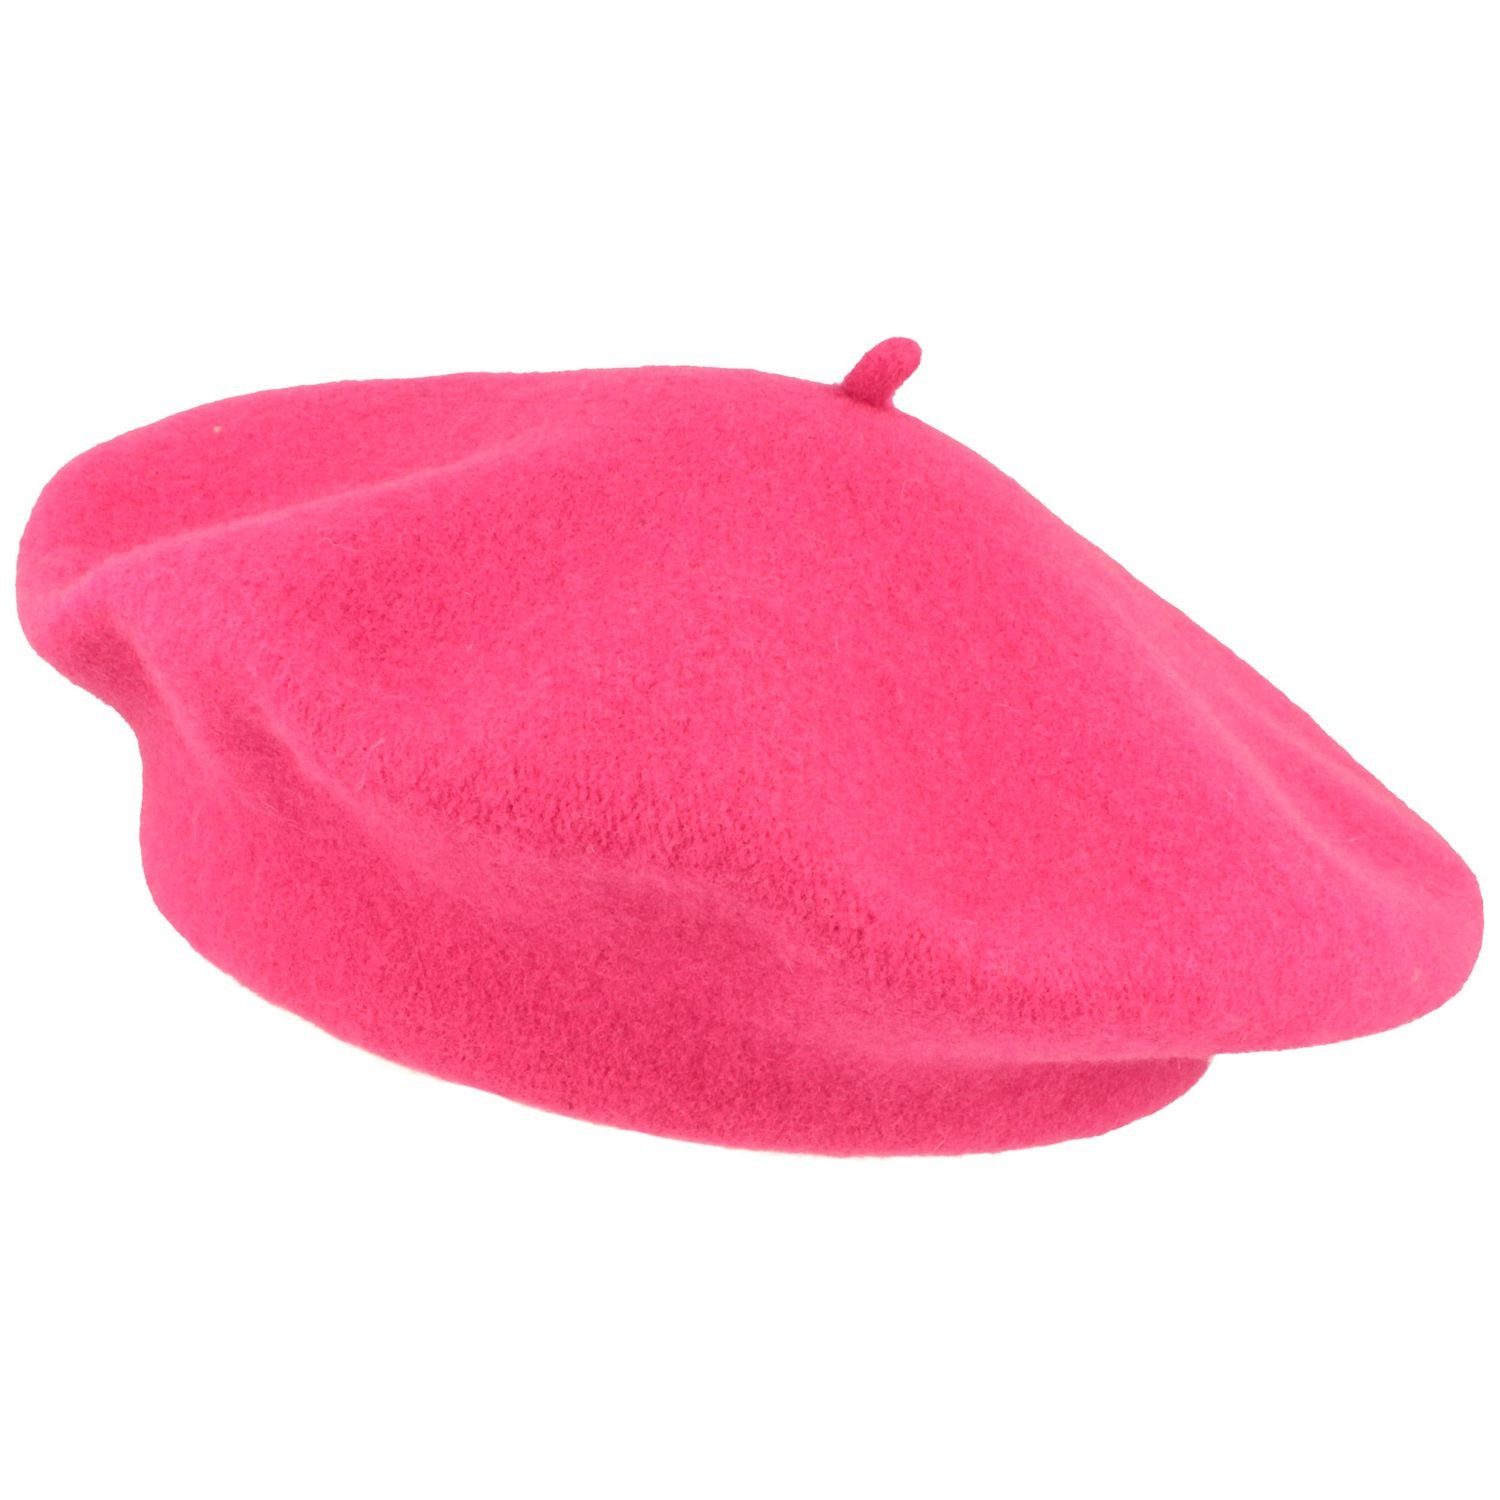 Kopka Baskenmütze klassisch aus 100% Schurwolle pink